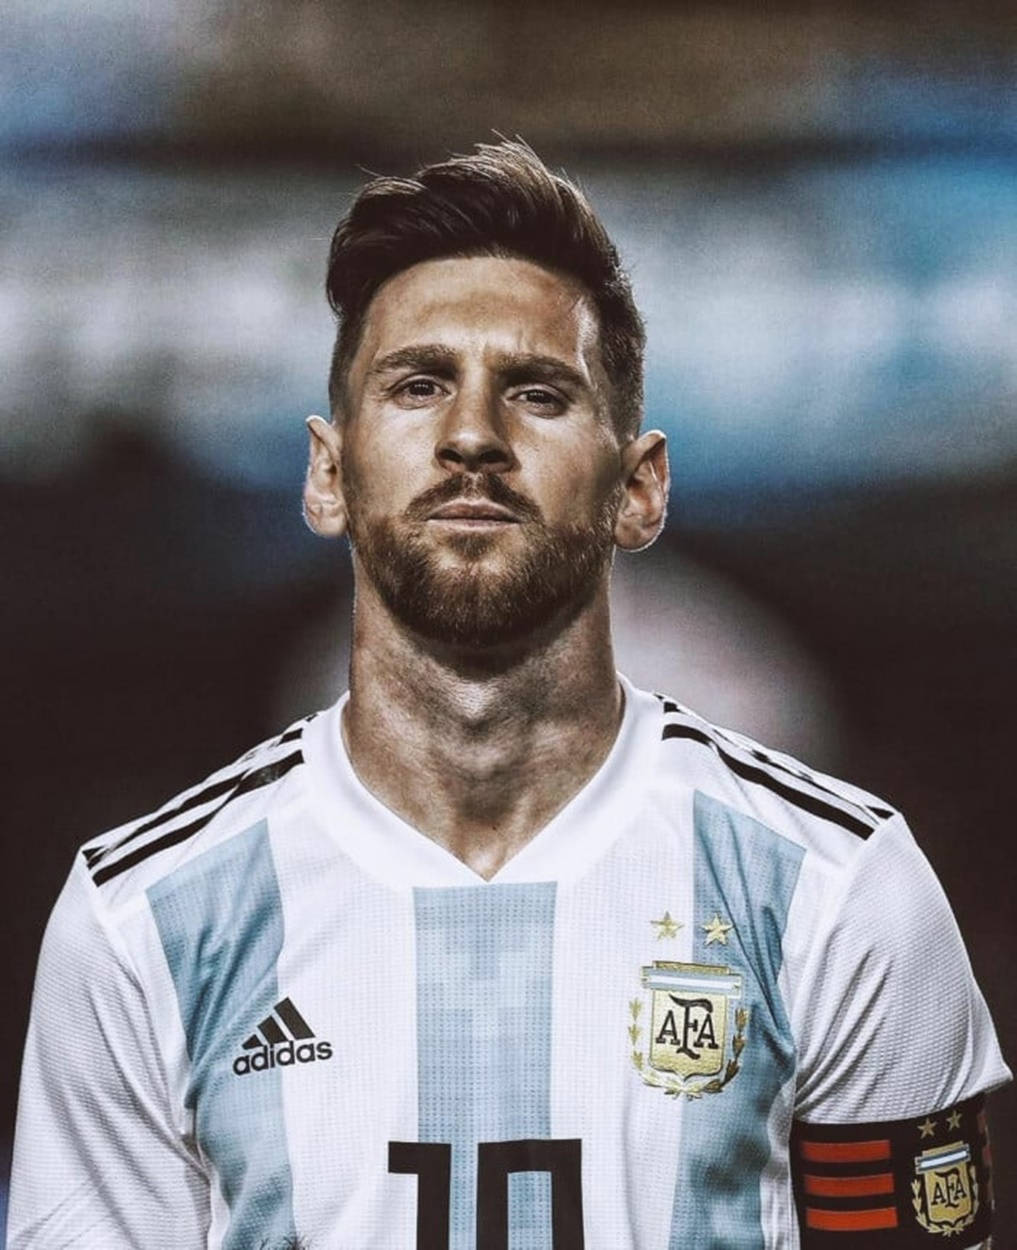 Messiargentina Fútbol En Blanco De Adidas. Fondo de pantalla